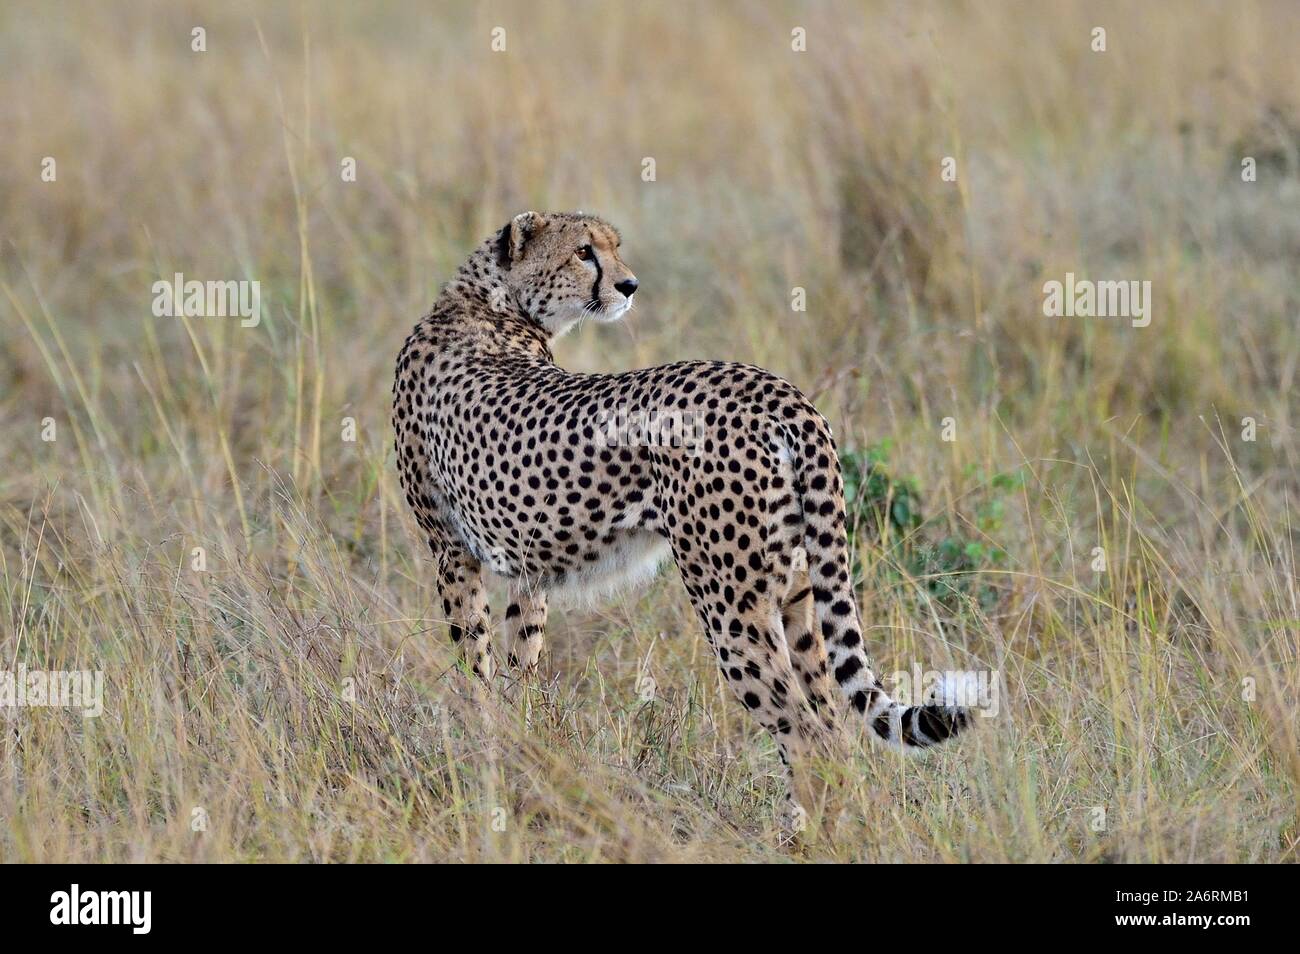 A beautiful cheetah walks the savannah Stock Photo